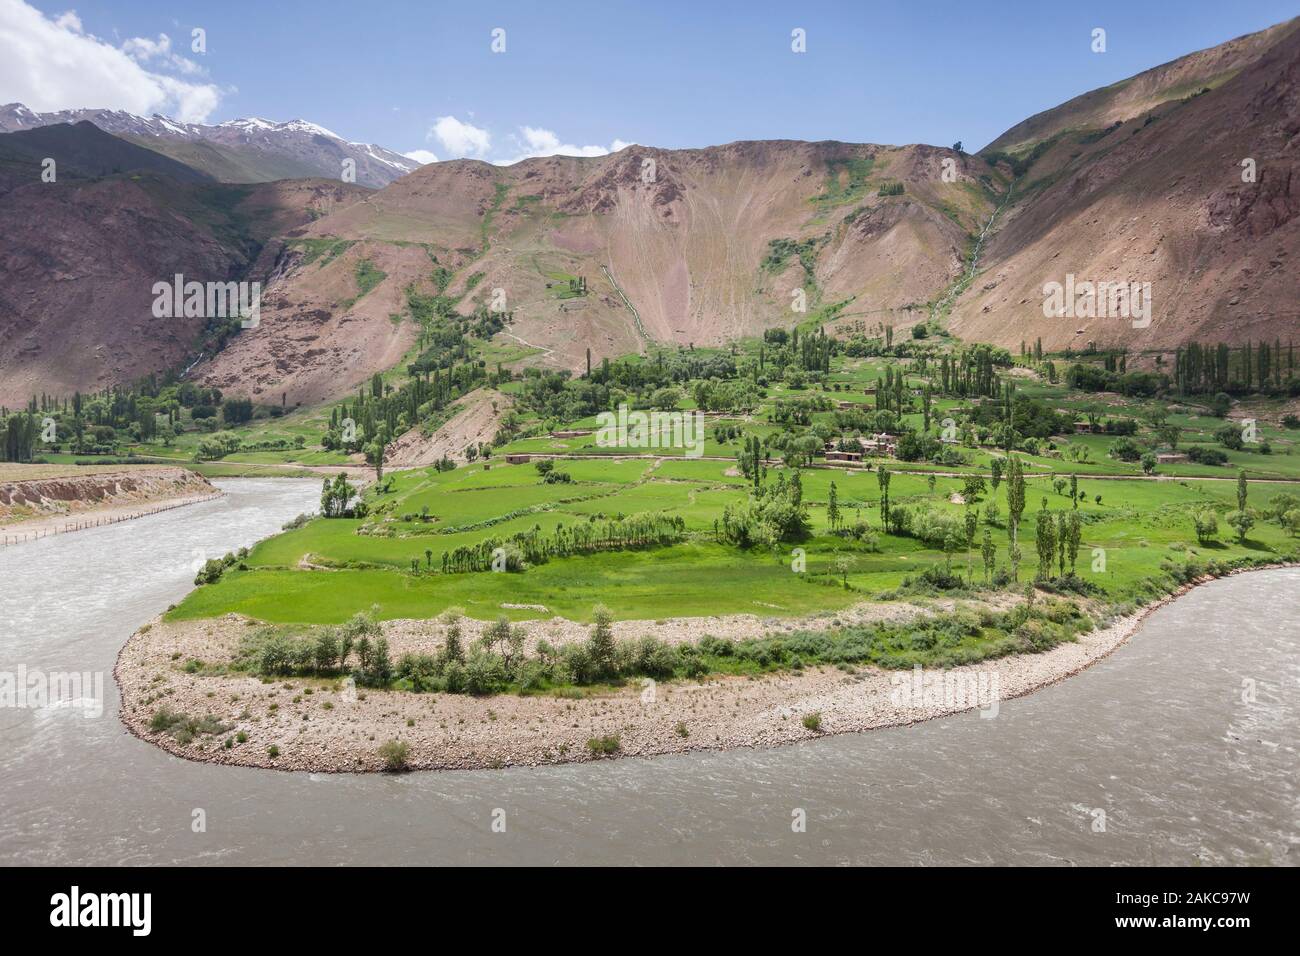 Tagikistan, Gorno-Badakhshan Regione autonoma, serpeggiante Fiume Piandj, verde delle culture e delle montagne del deserto, Afghanistan visto dal Tagikistan Foto Stock